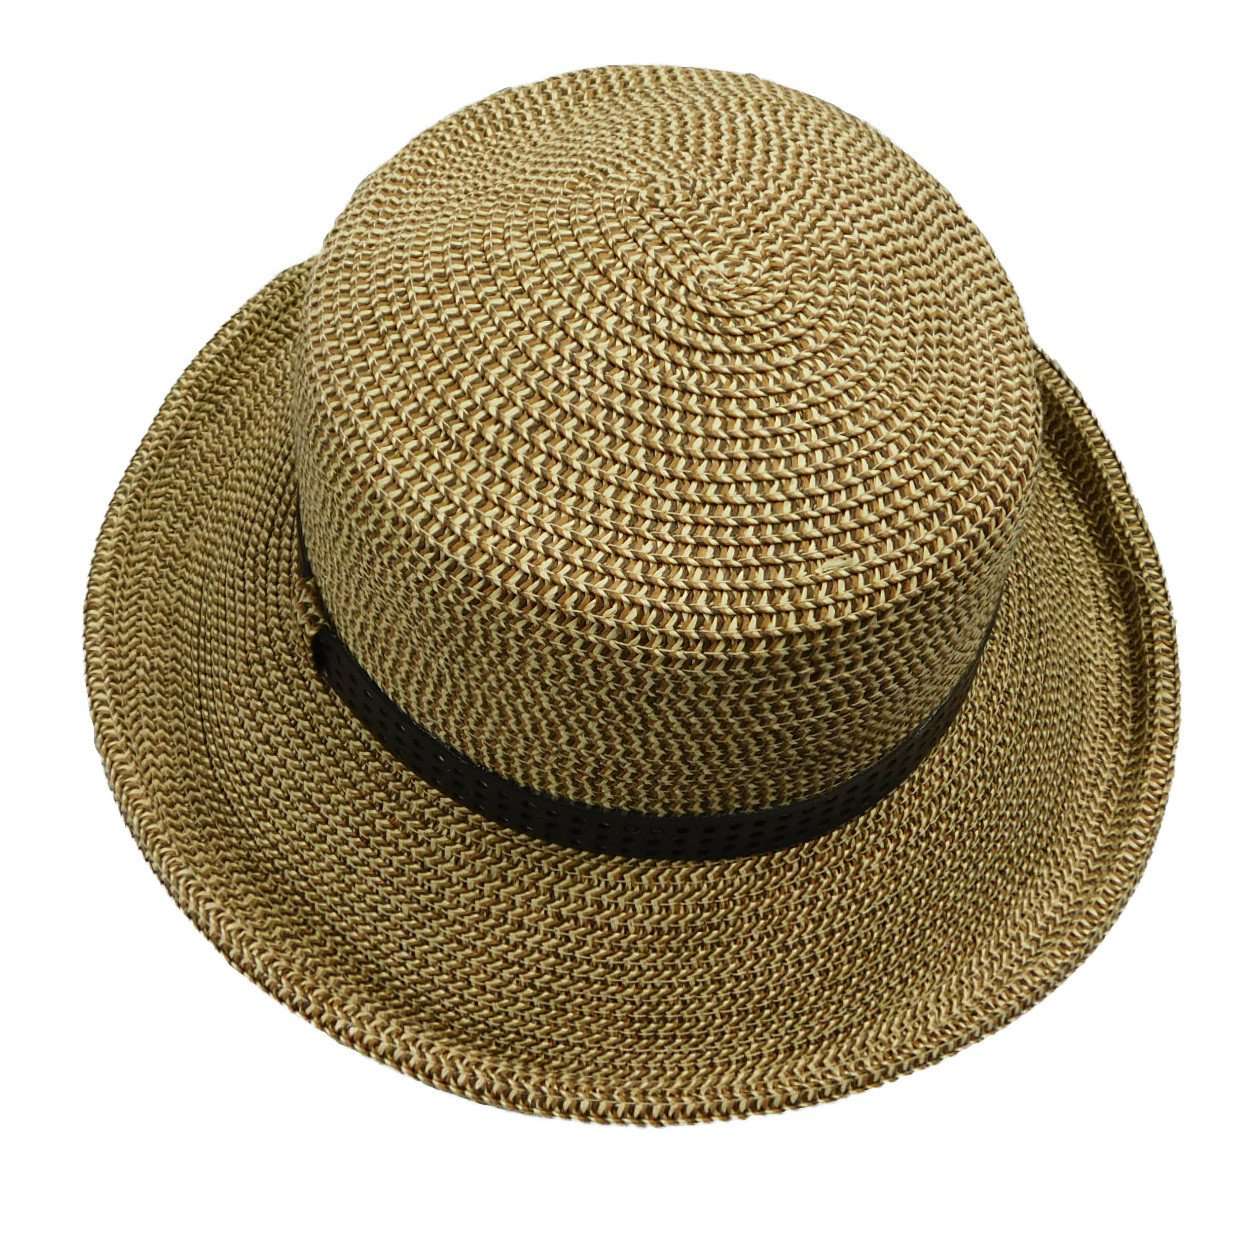 Small Kettle Brim by Boardwalk, Kettle Brim Hat - SetarTrading Hats 